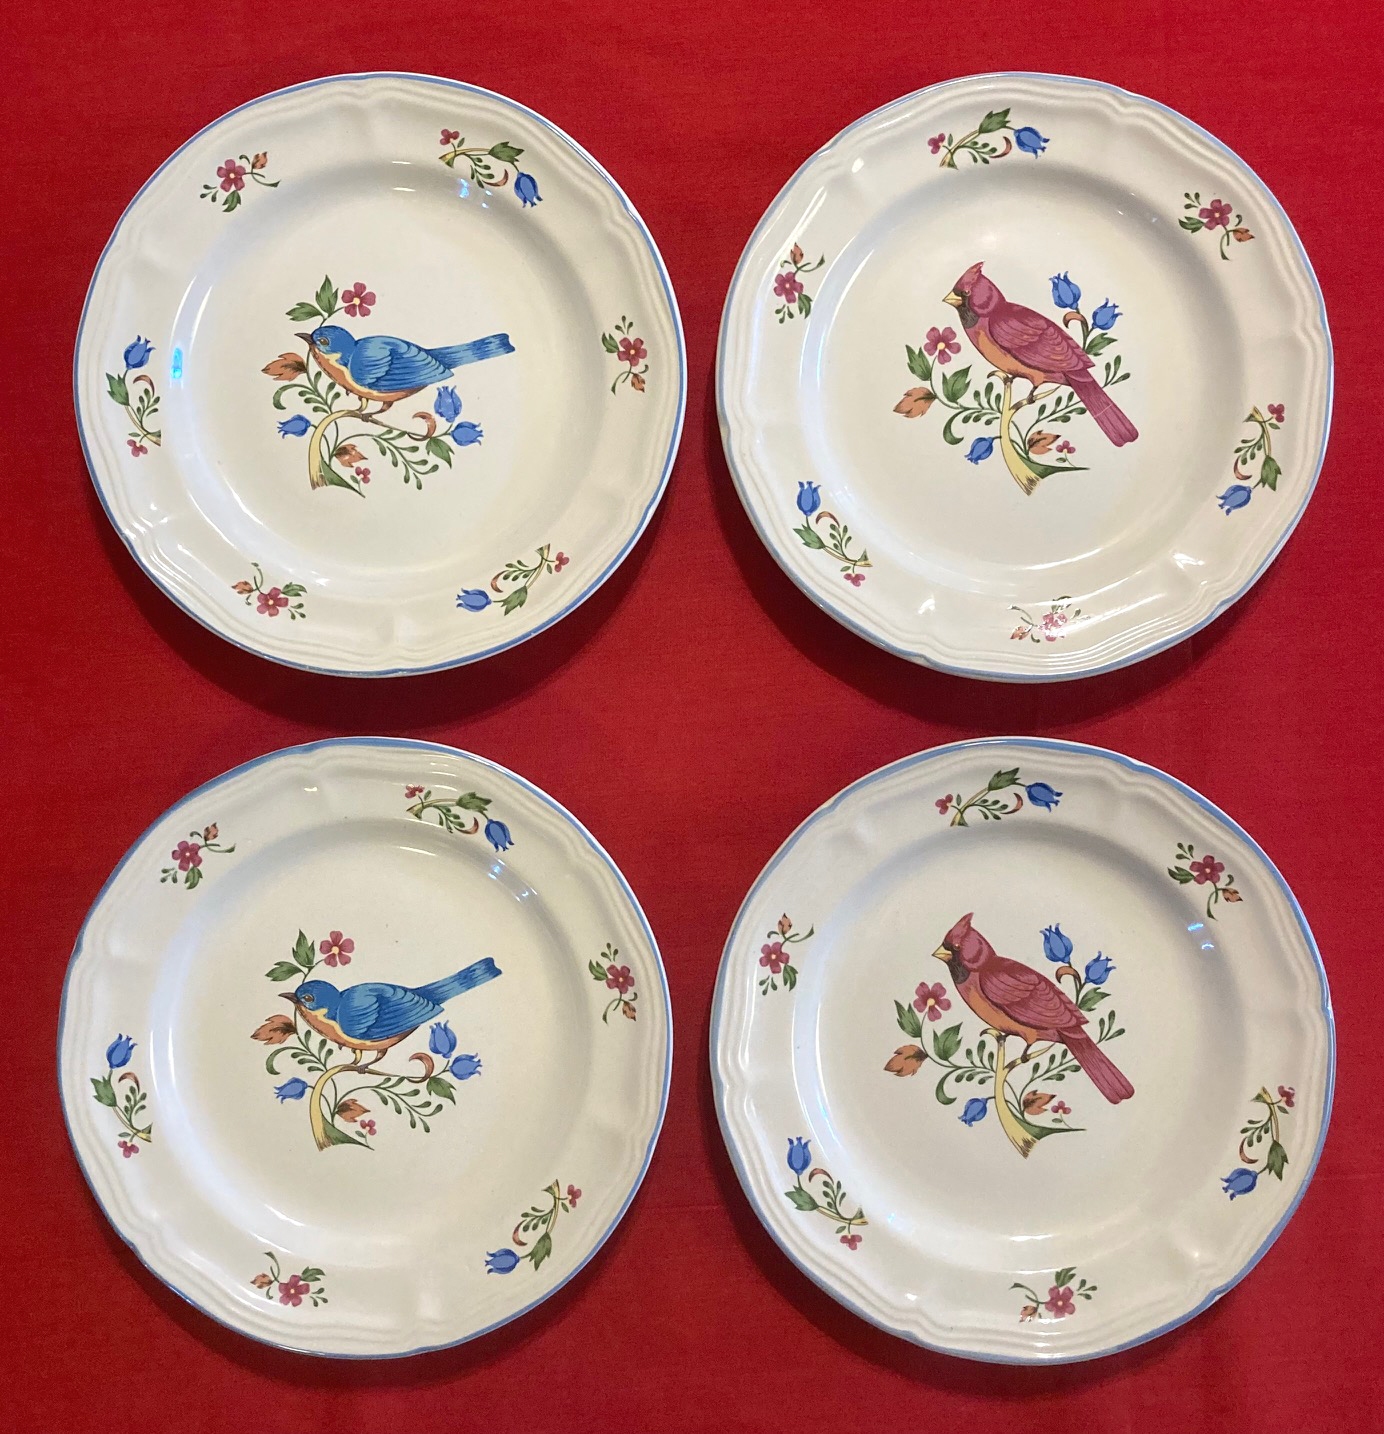 Vintage Tienshan bread or salad plates with birds cardinals bluebirds set of 4 - $12.00